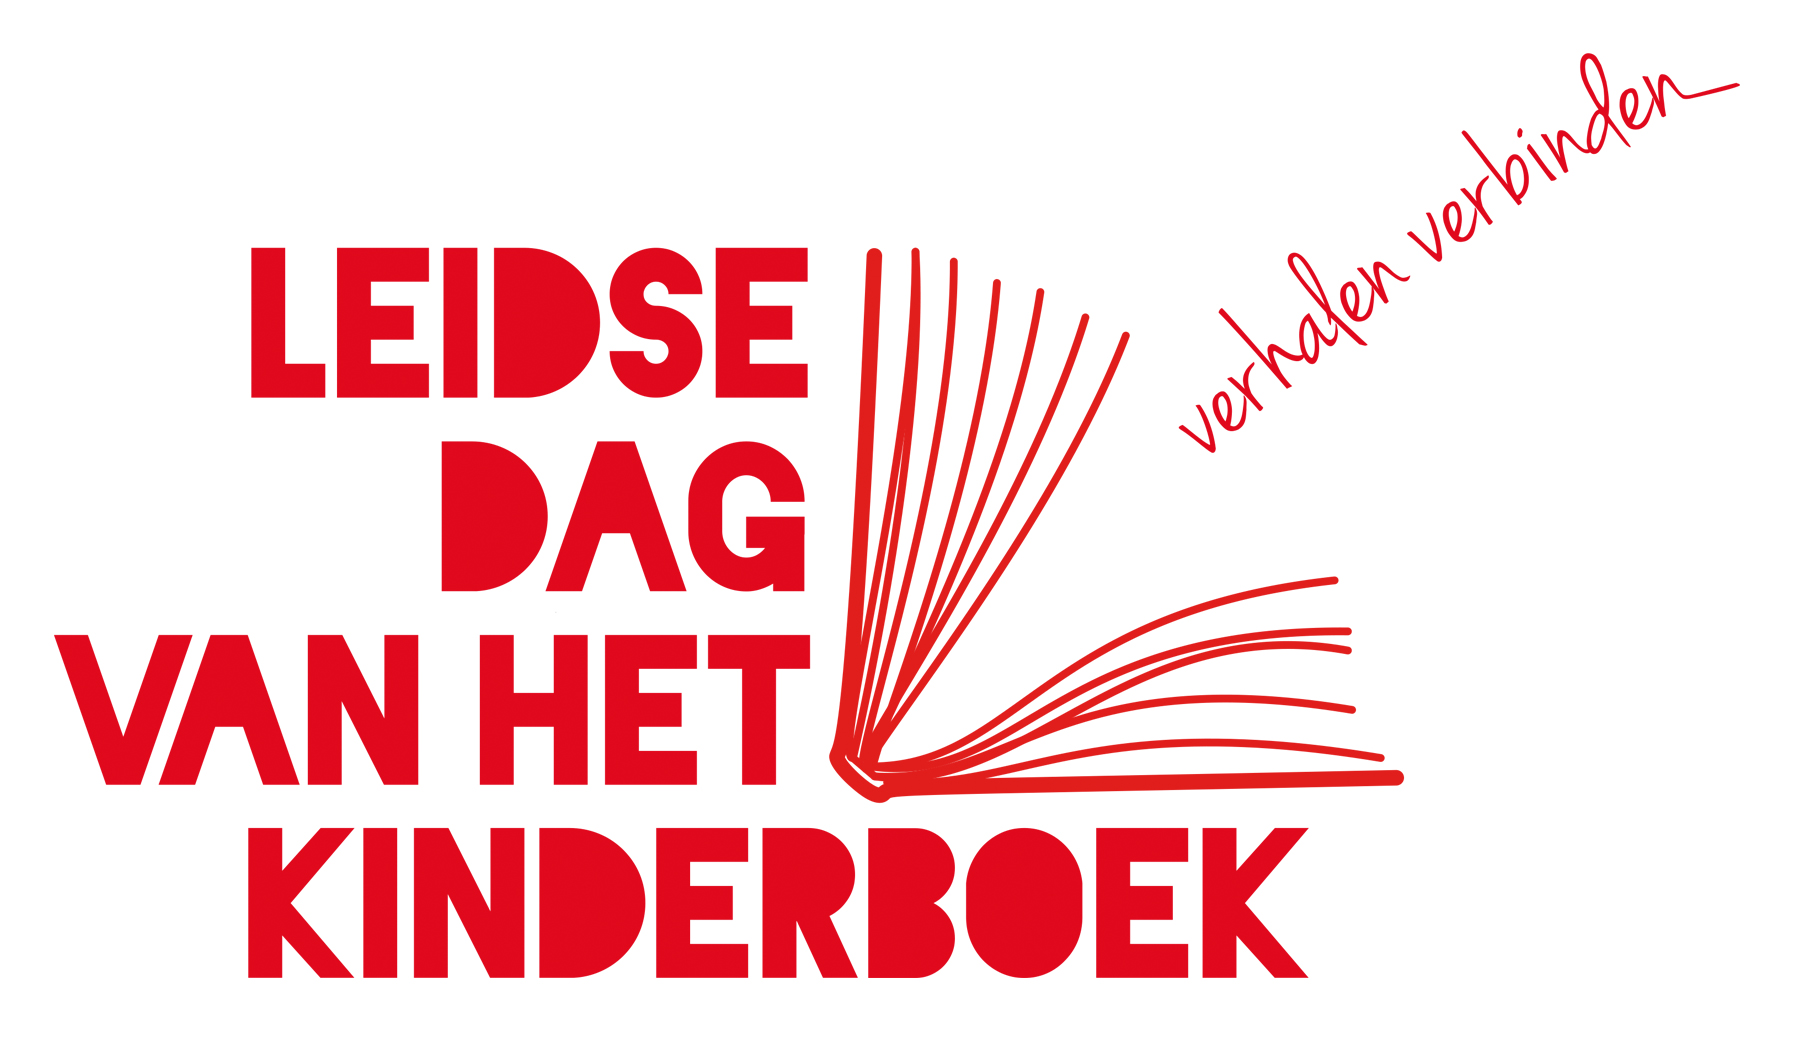 Leidse-dag-van-het-kinderboek-logo